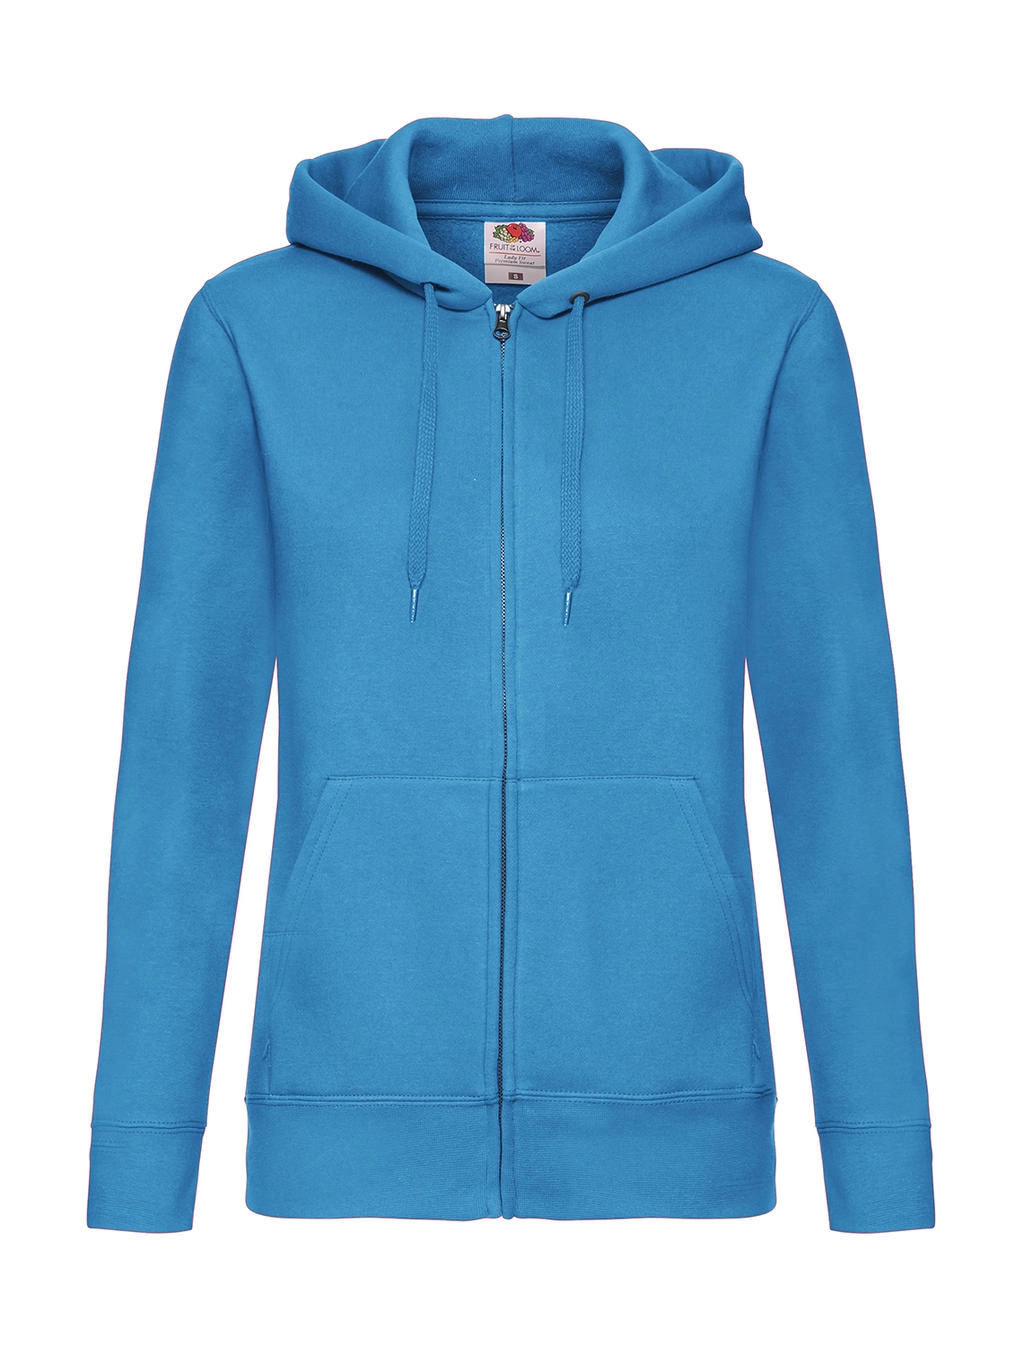 Premium Hooded Sweat Jacket Lady-Fit zum Besticken und Bedrucken in der Farbe Azure Blue mit Ihren Logo, Schriftzug oder Motiv.